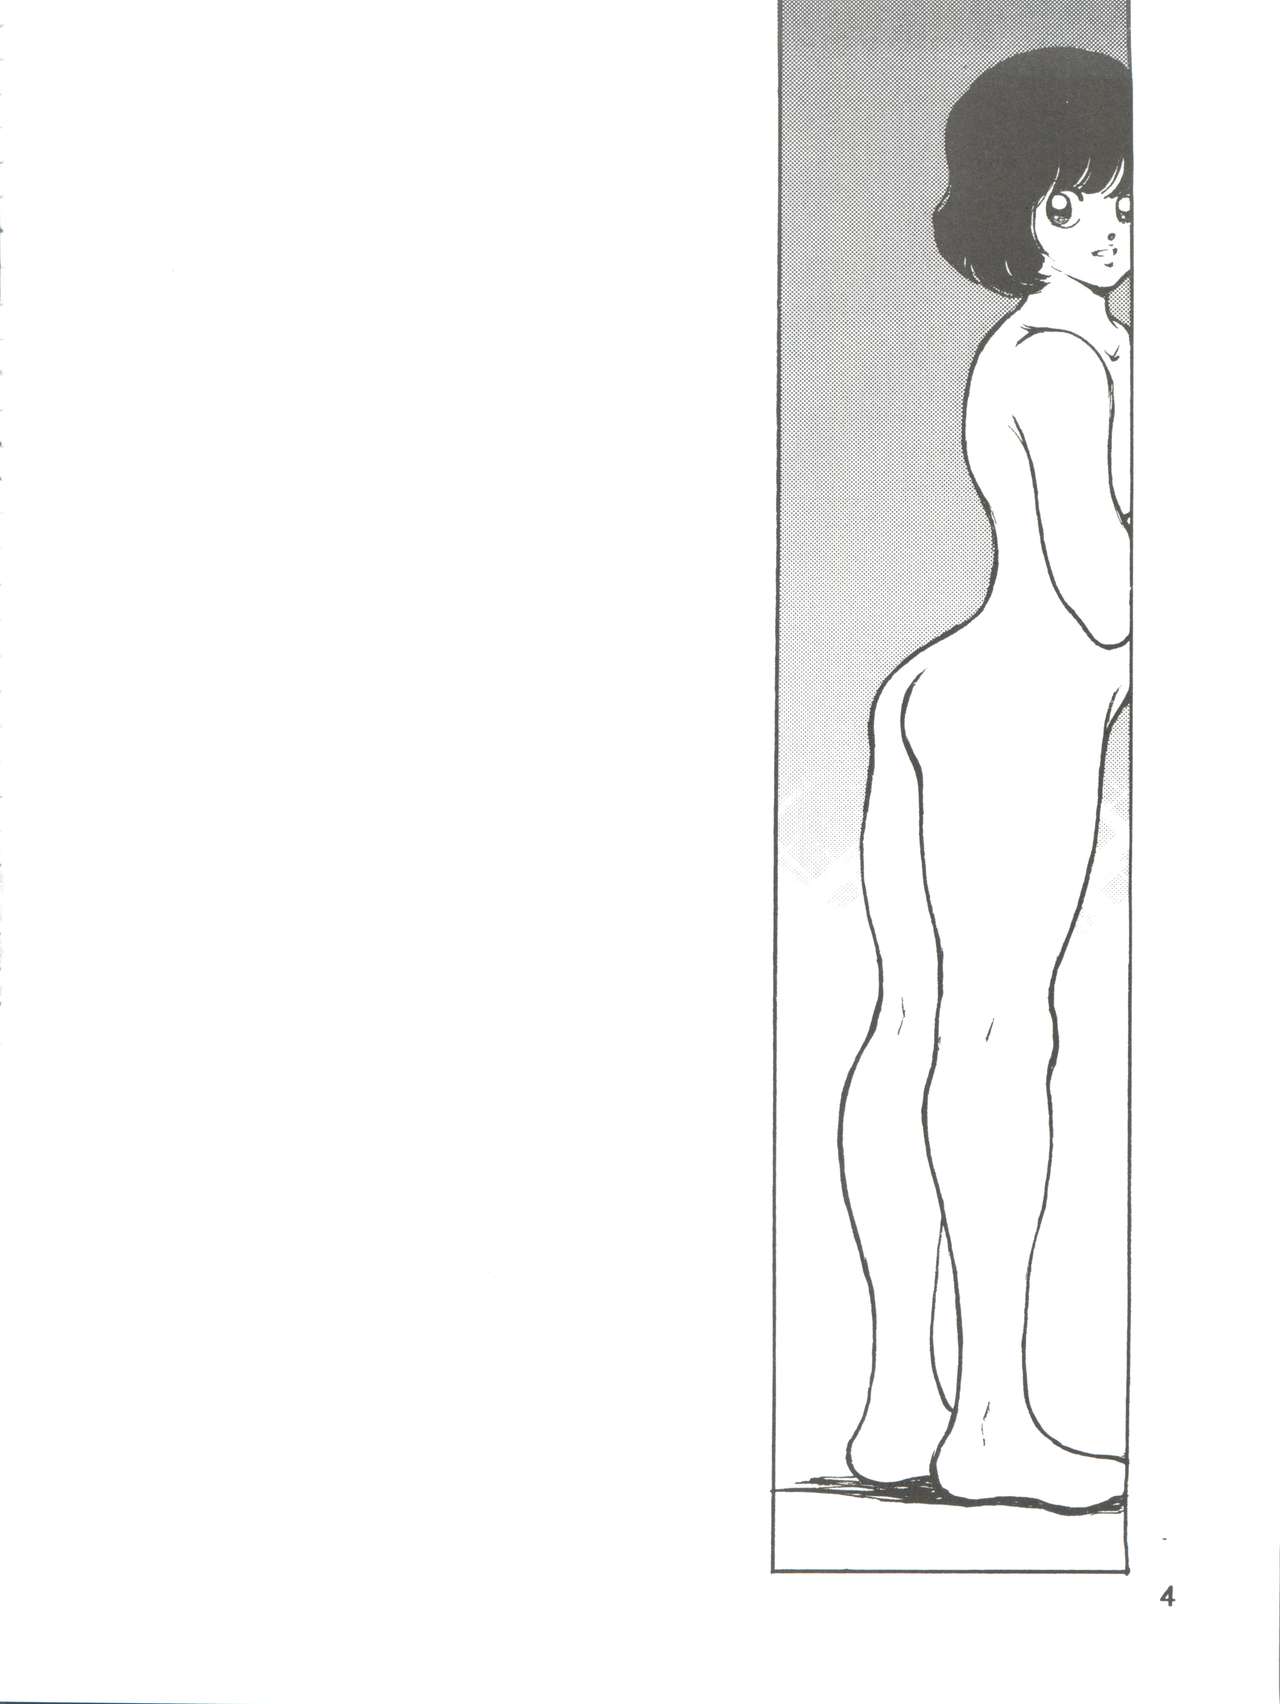 [STUDIO SHARAKU (Sharaku Seiya)] Kanshoku -TOUCH- vol.5 (Miyuki) [2000-08-13] page 4 full